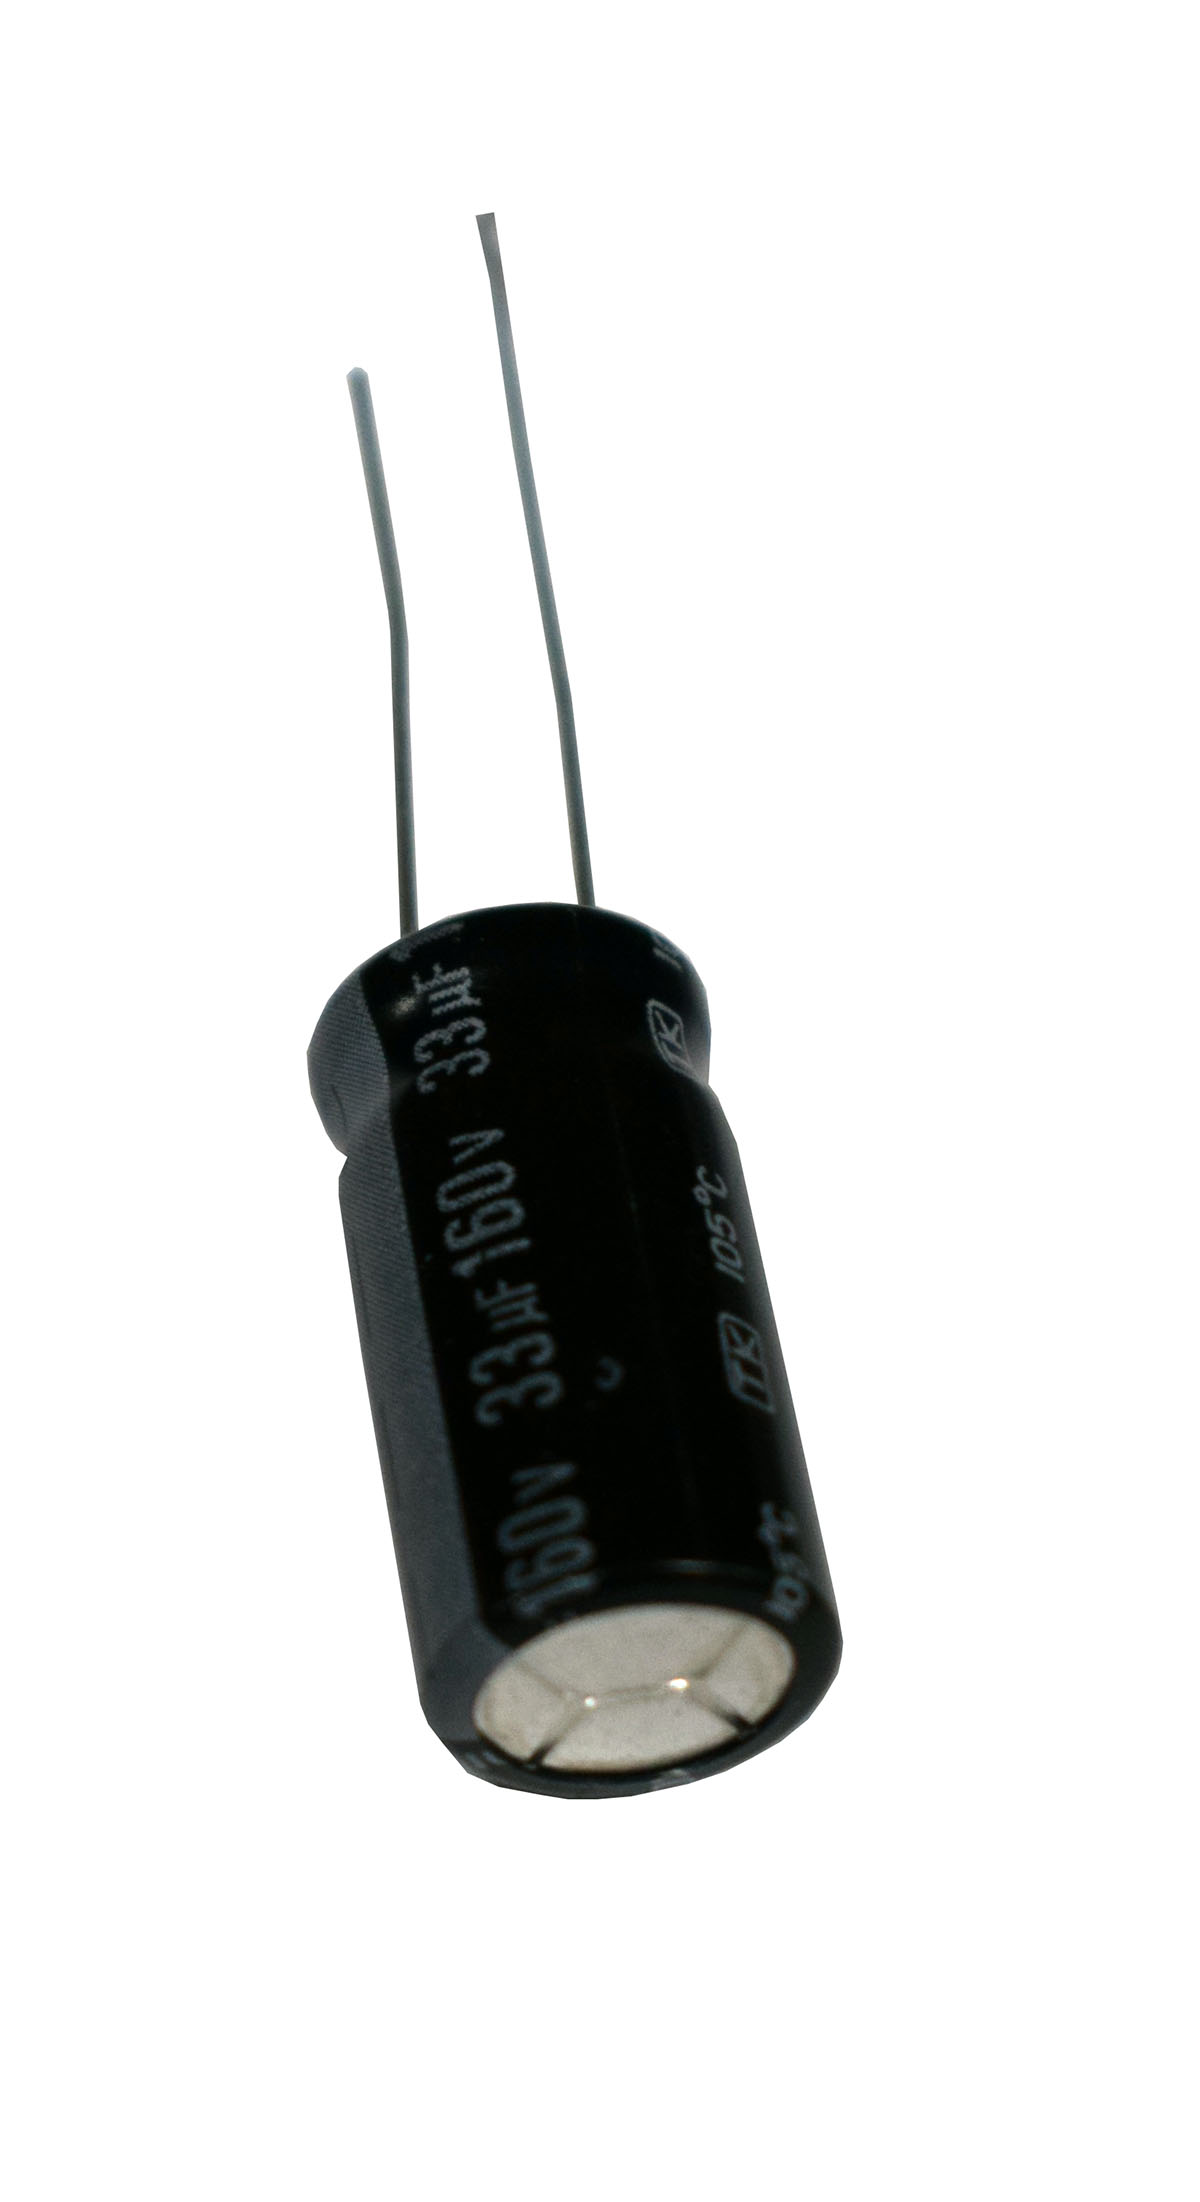 Condensador electrolítico de 33mf a 160v. - CERL33MF160V - LELON